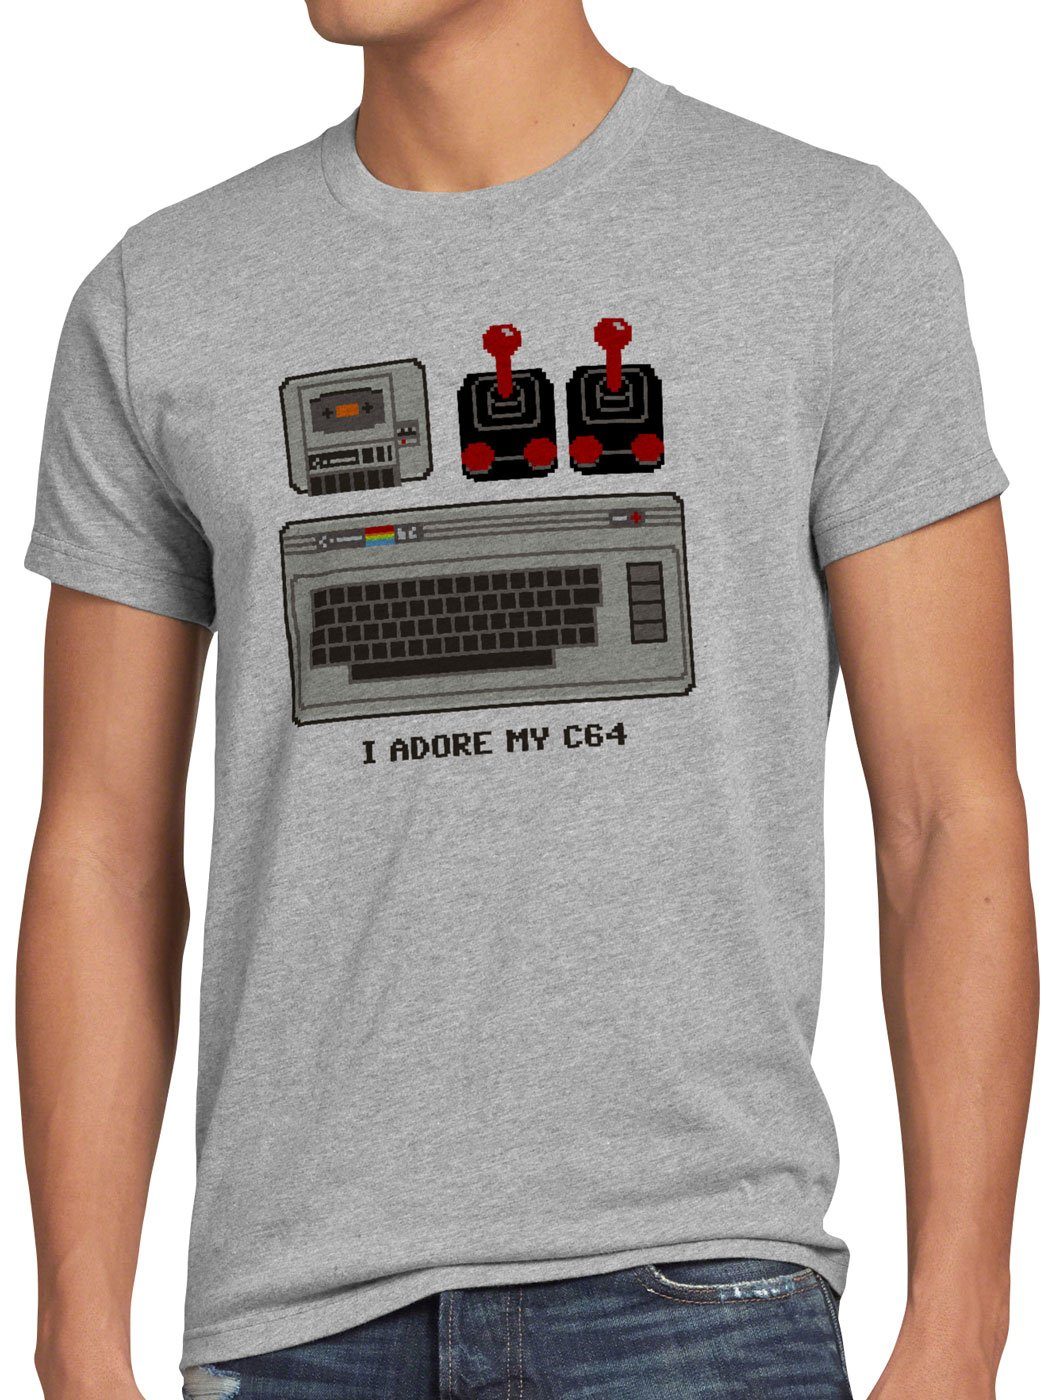 grau heimcomputer meliert style3 classic Print-Shirt C64 Adore Herren I T-Shirt My